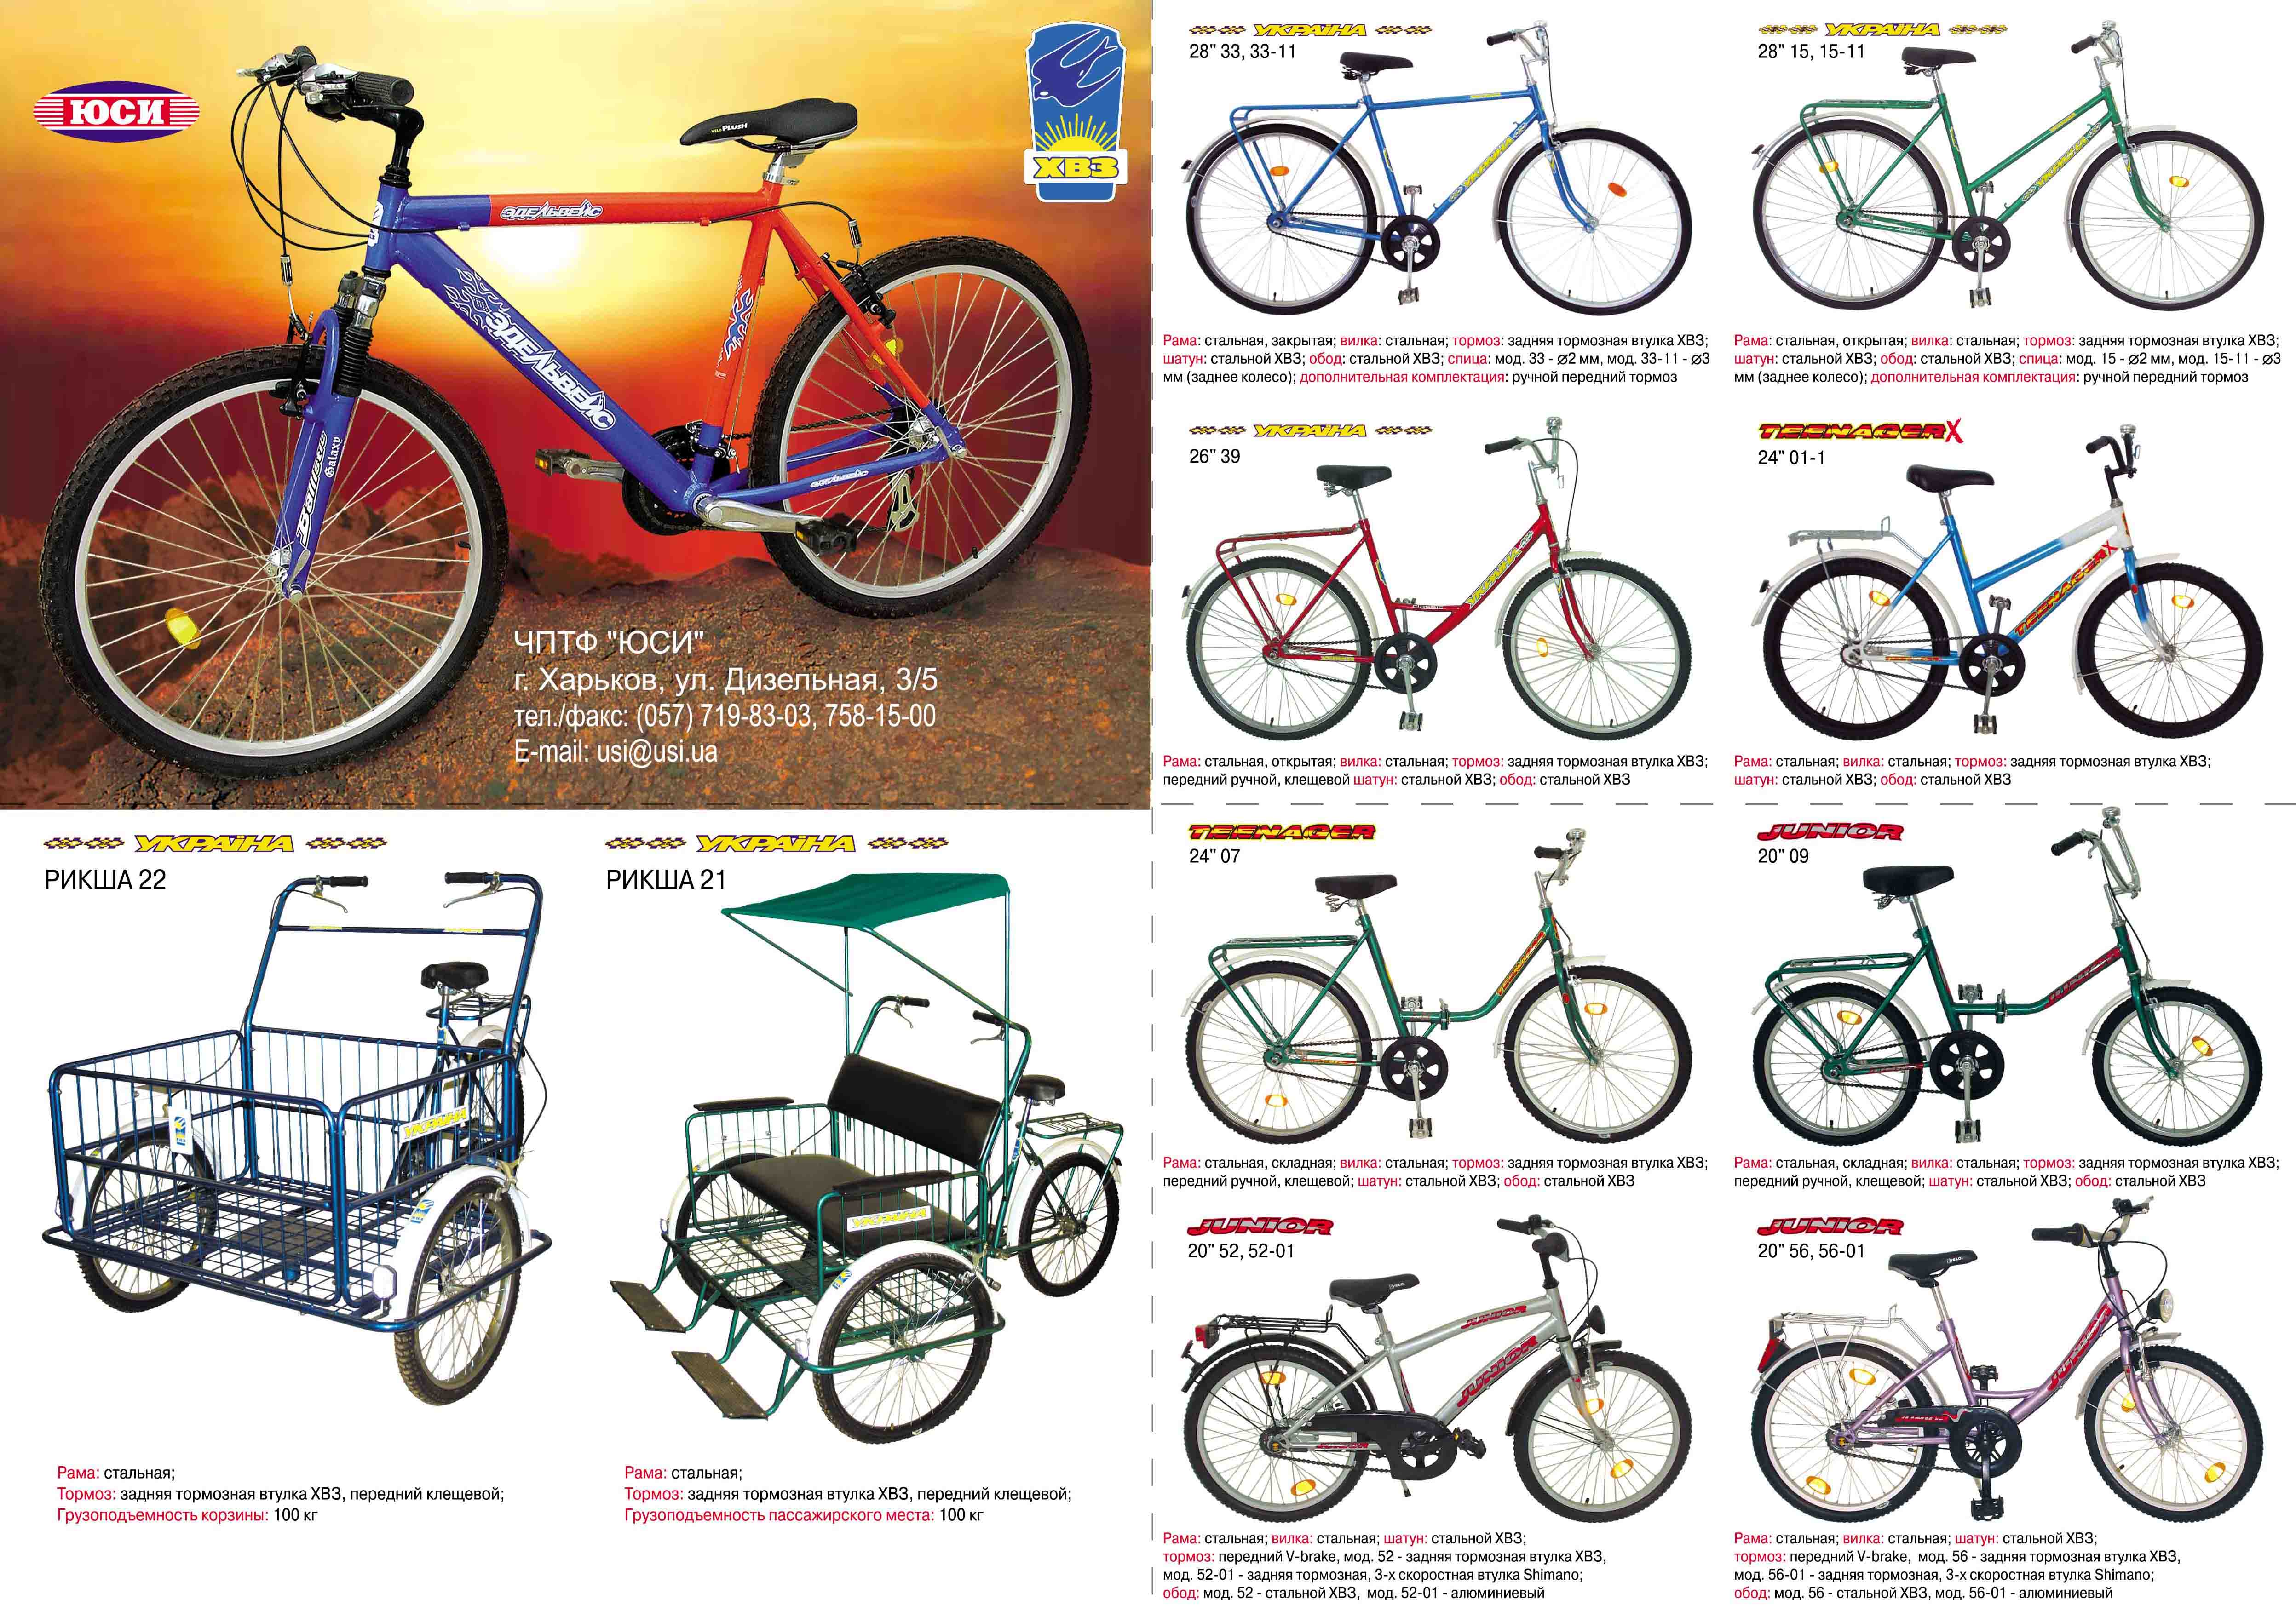 Марки велосипедов, известные во всем мире, рекомендации по выбору